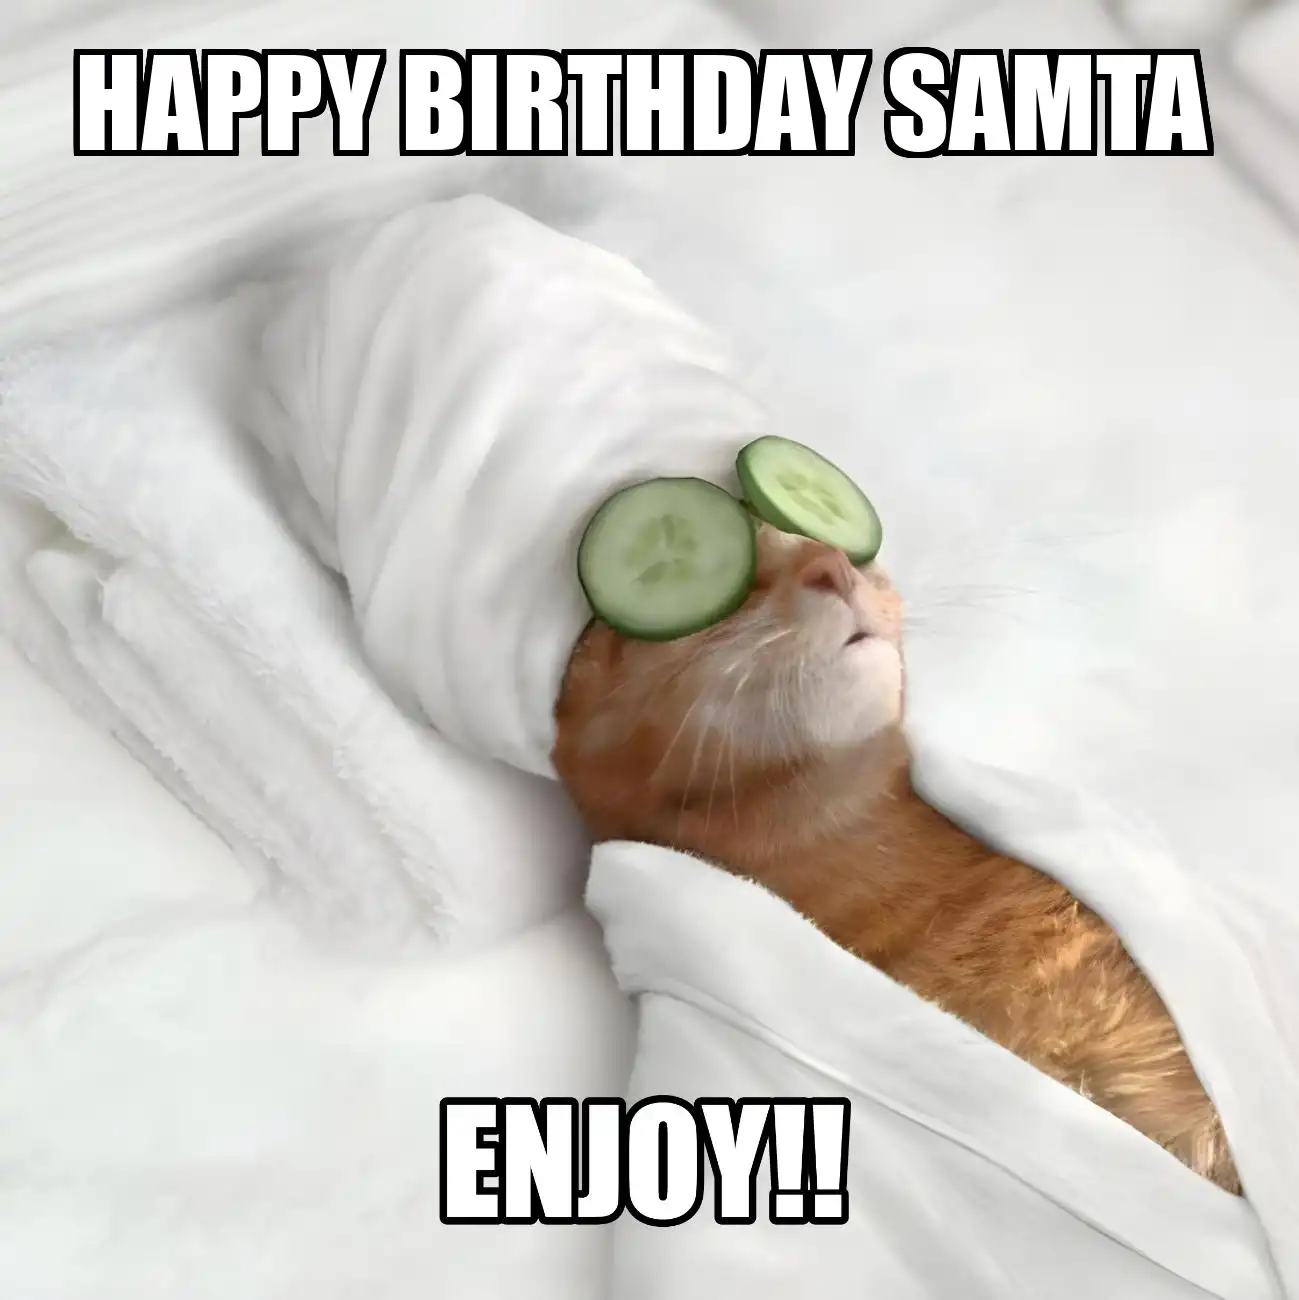 Happy Birthday Samta Enjoy Cat Meme